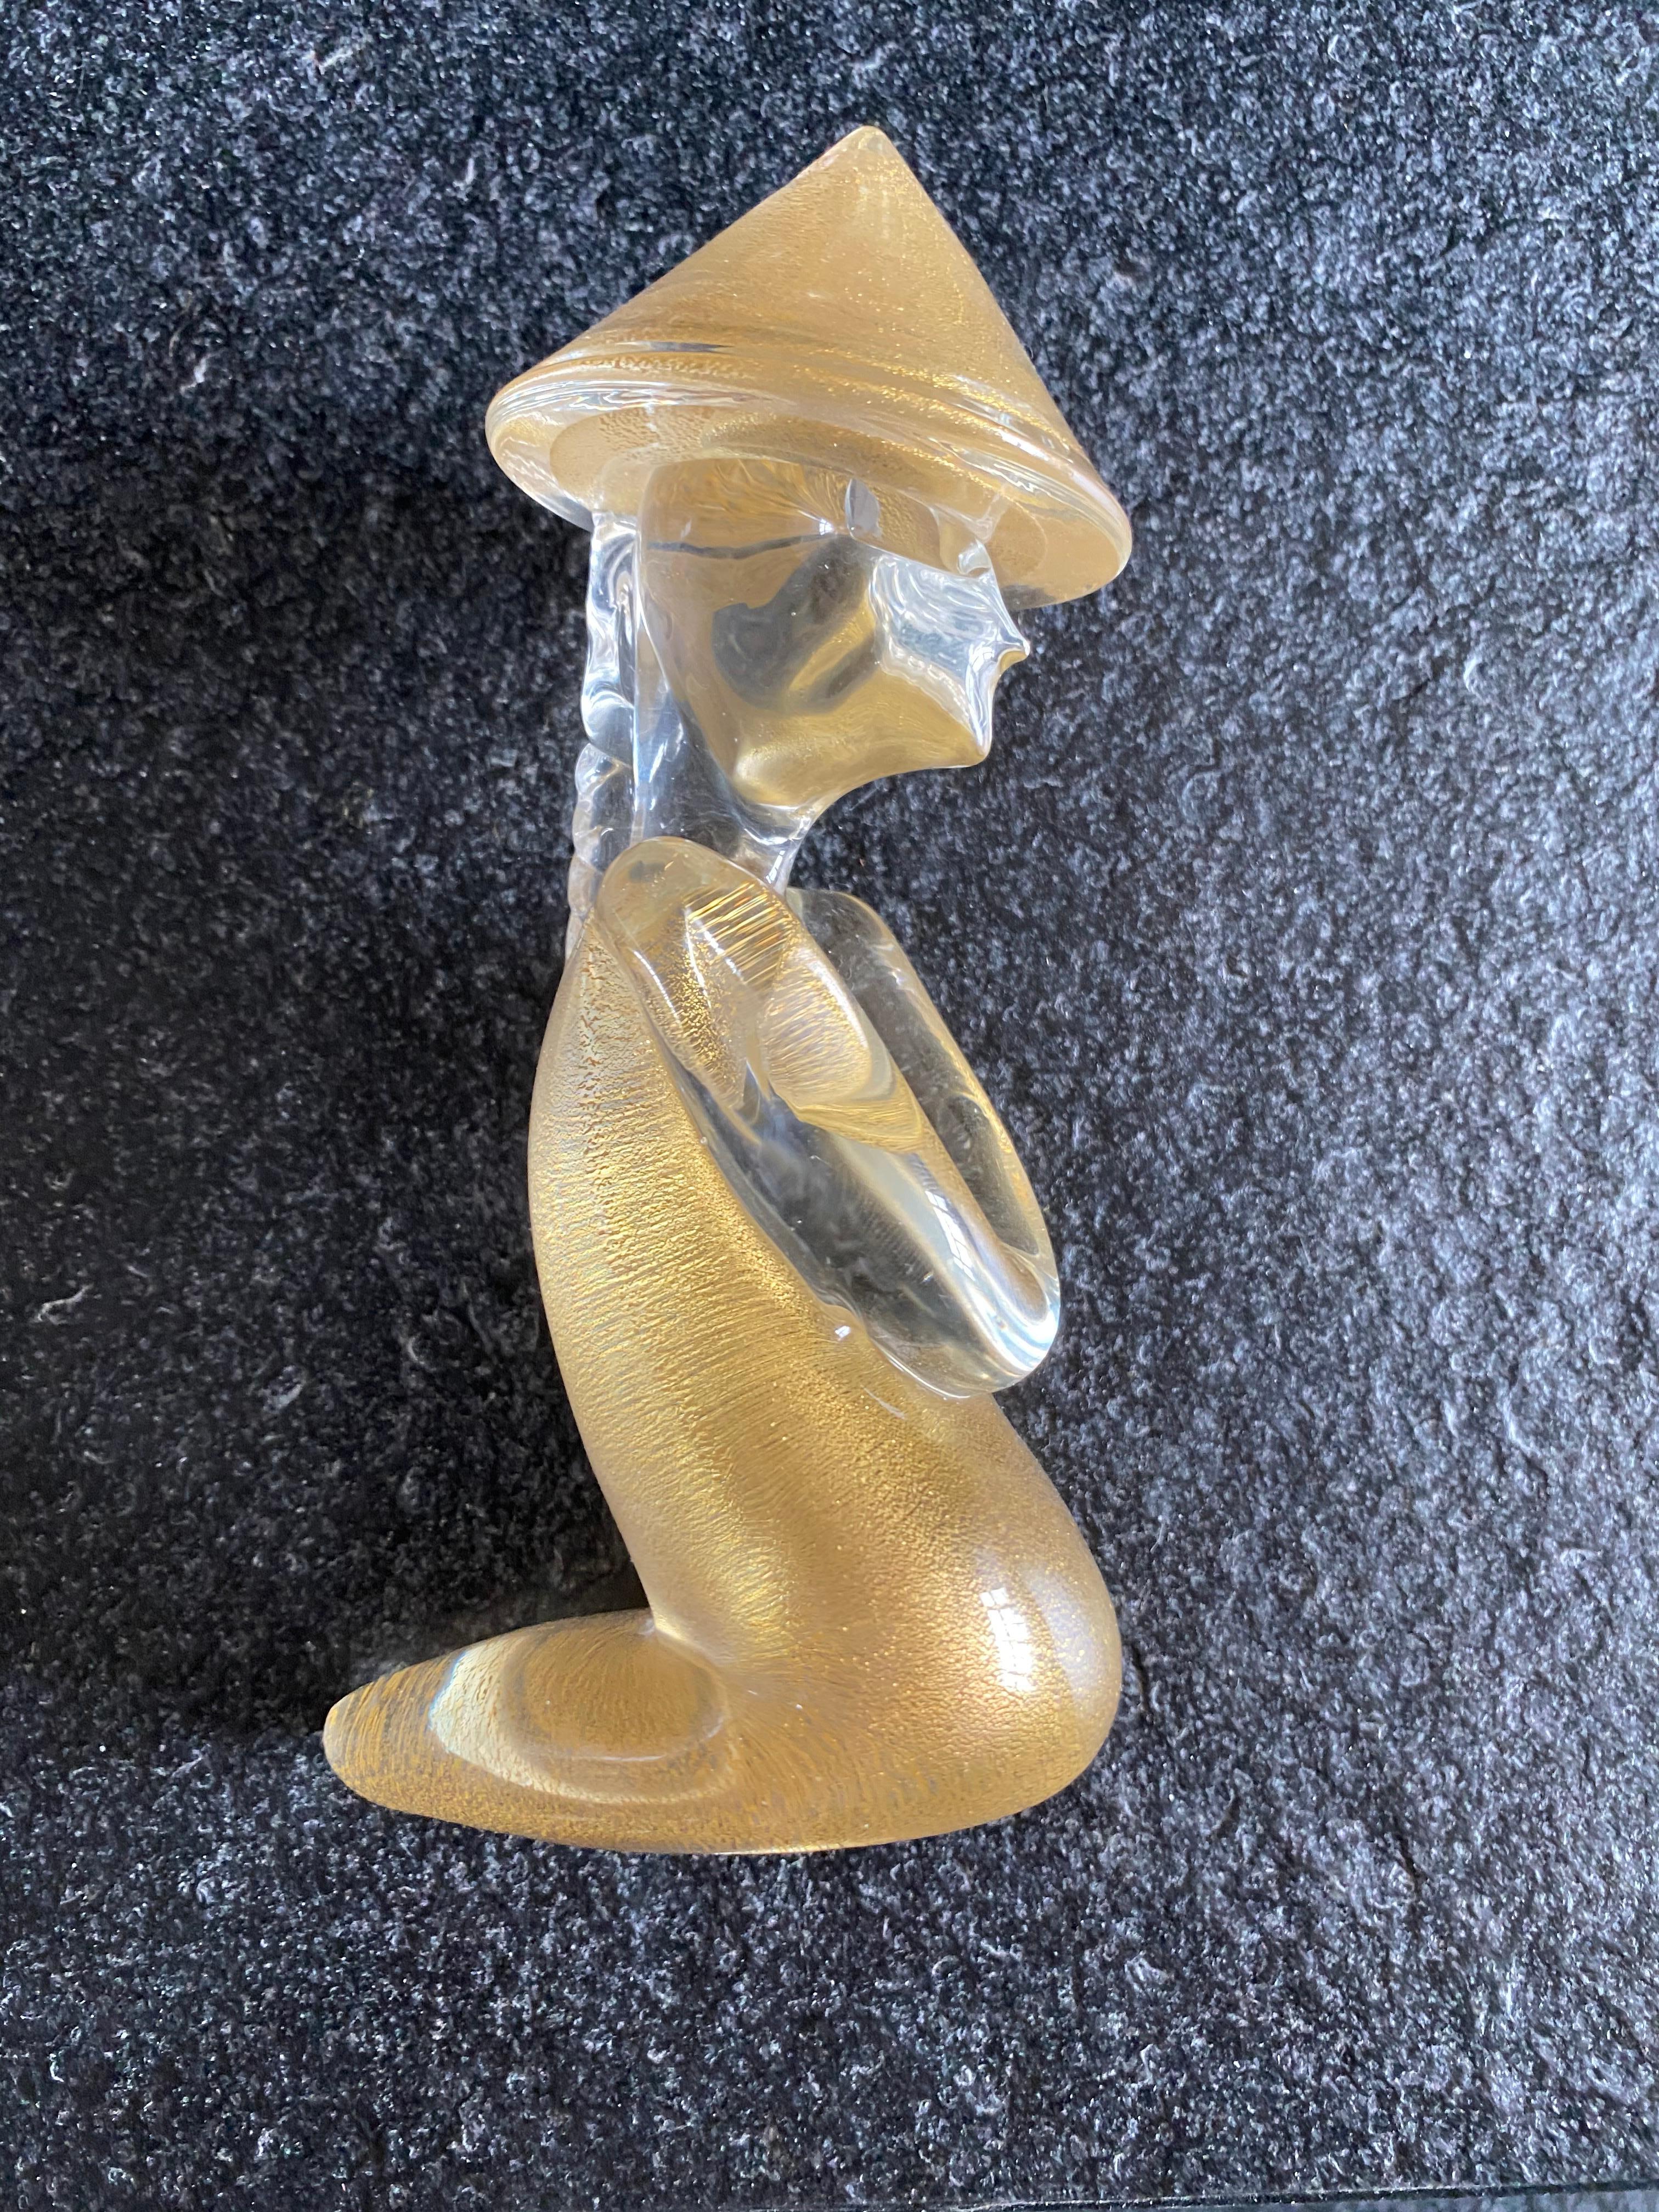 Toso
Murano
Ravissante statuette en verre de Murano
Chinois
Murano et paillettes d'or
Parfait état
vers 1980
Mesures : H 16 x P 10 x L 6 cm
390 euros.